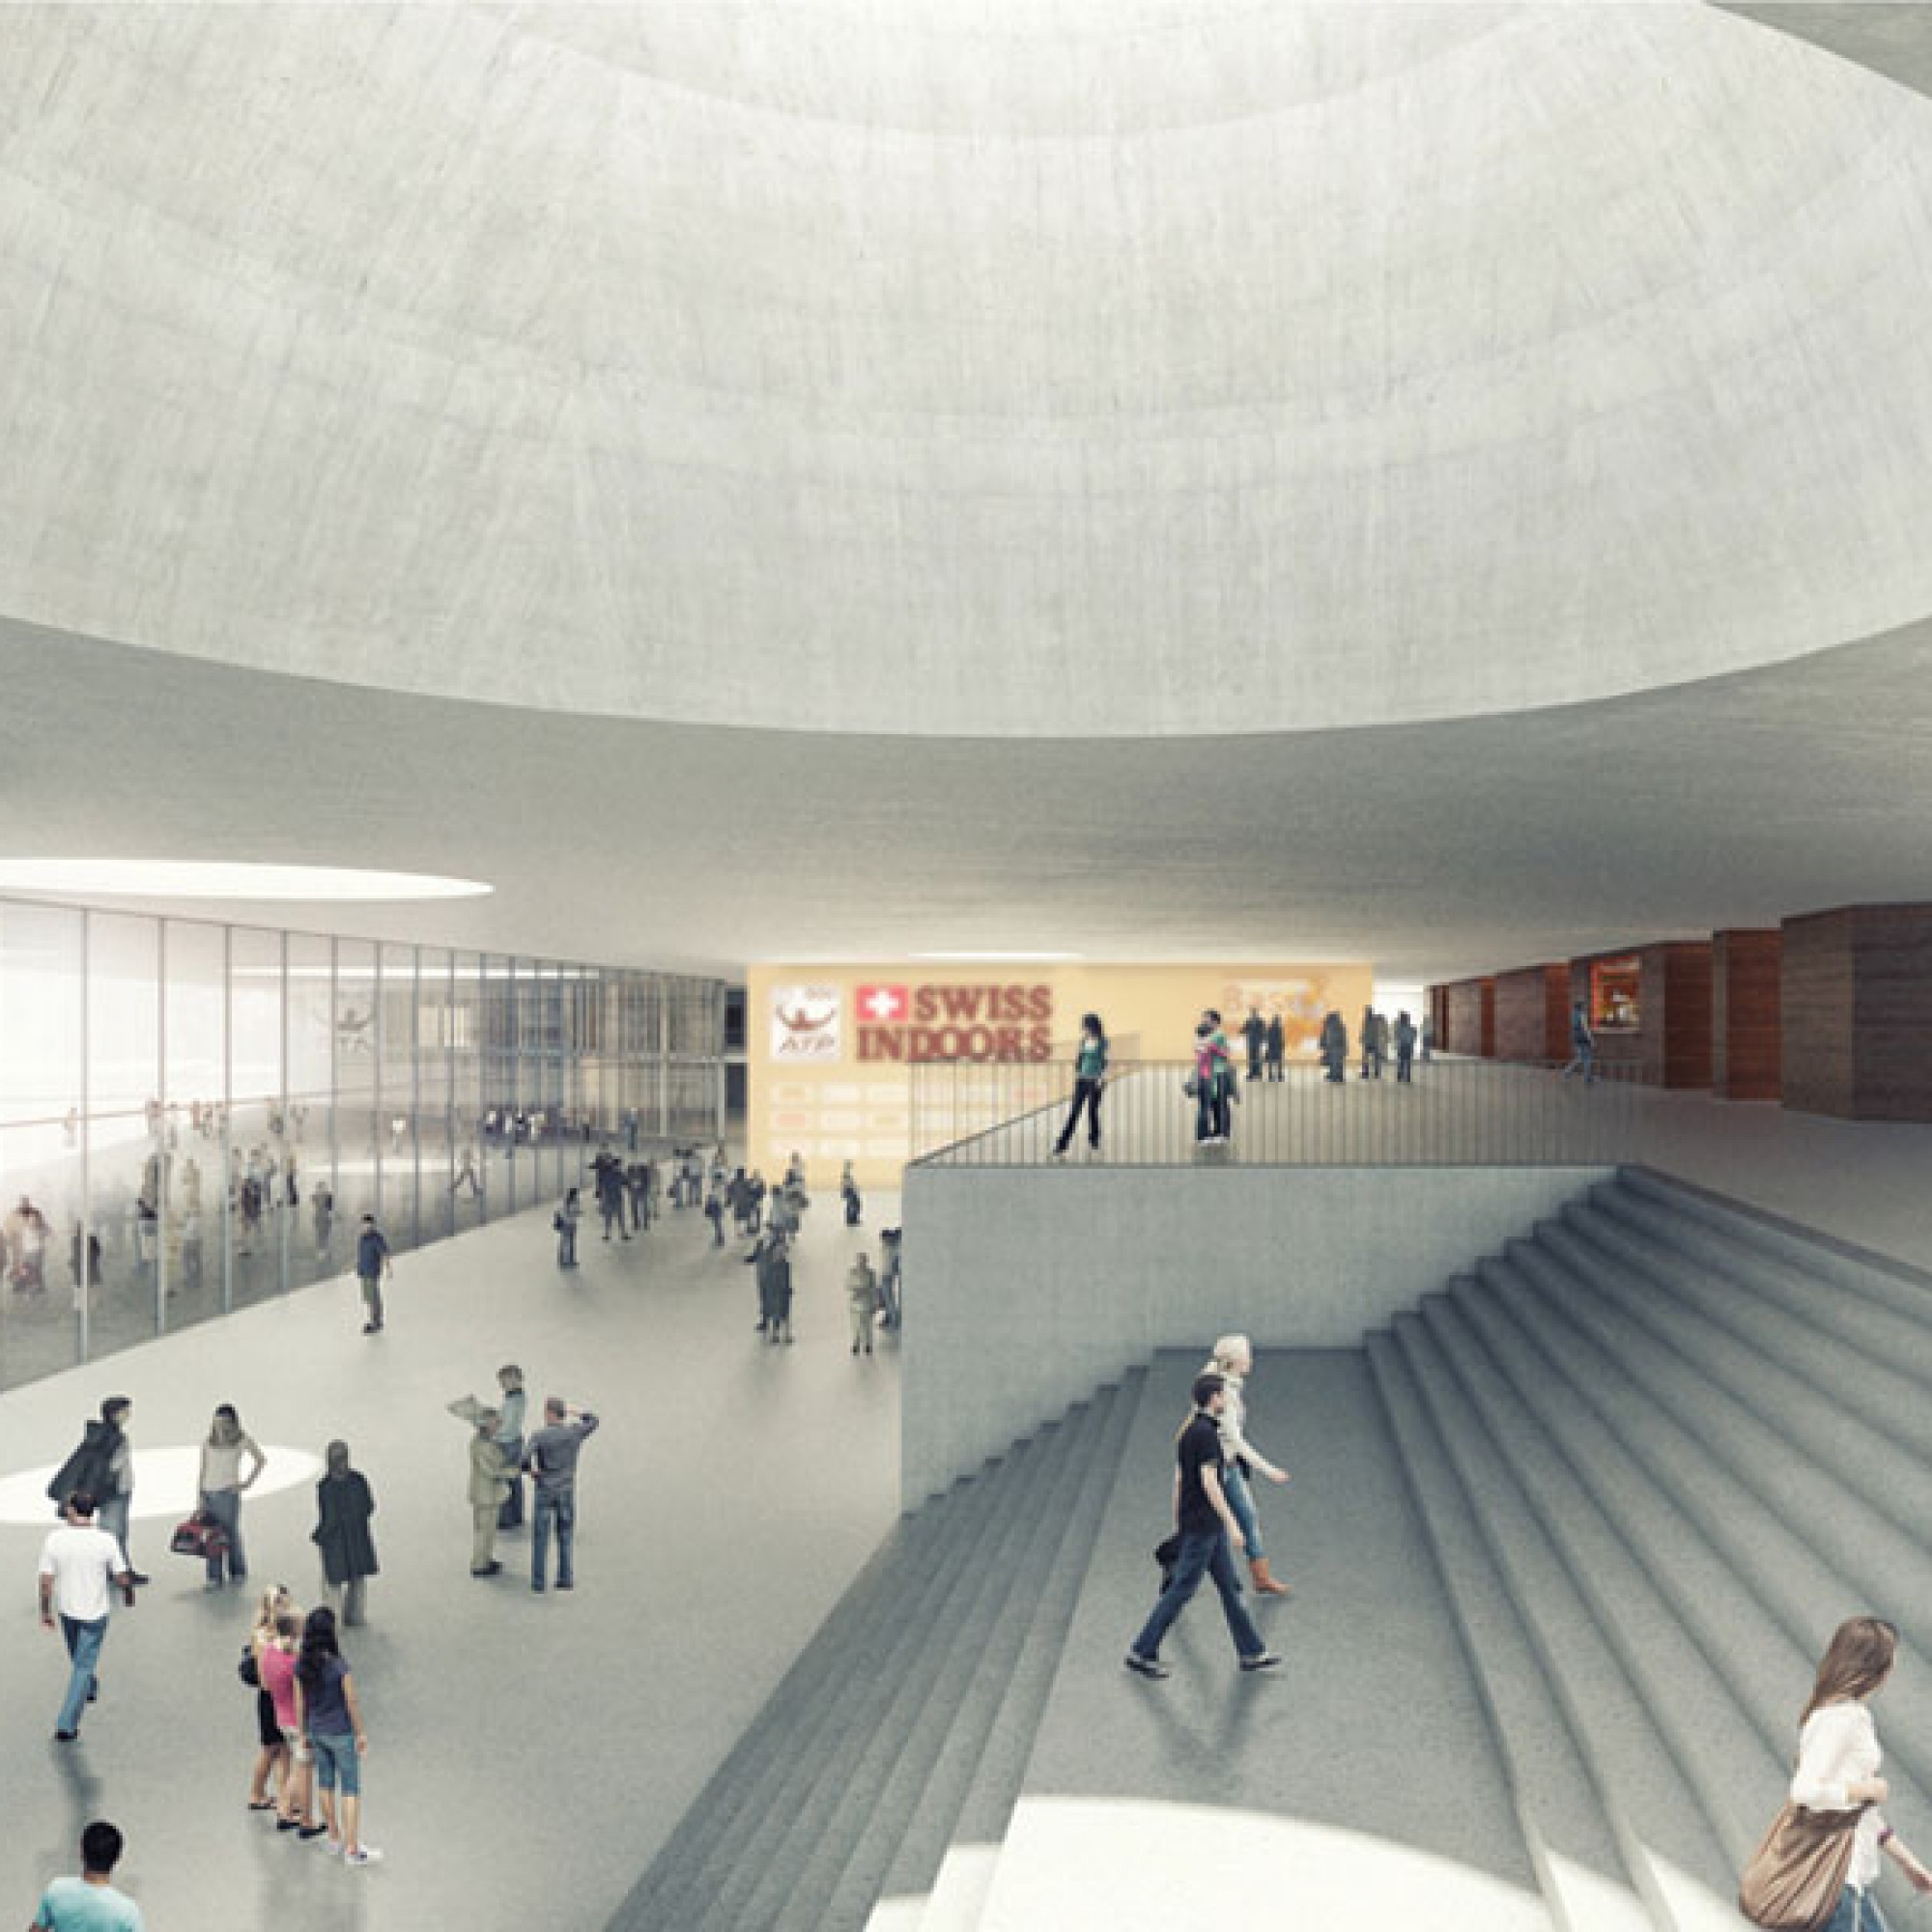 Visualisierung des neuen Foyers (Architektengemeinschaft Degelo, Berrel, Berrel, Kräutler)